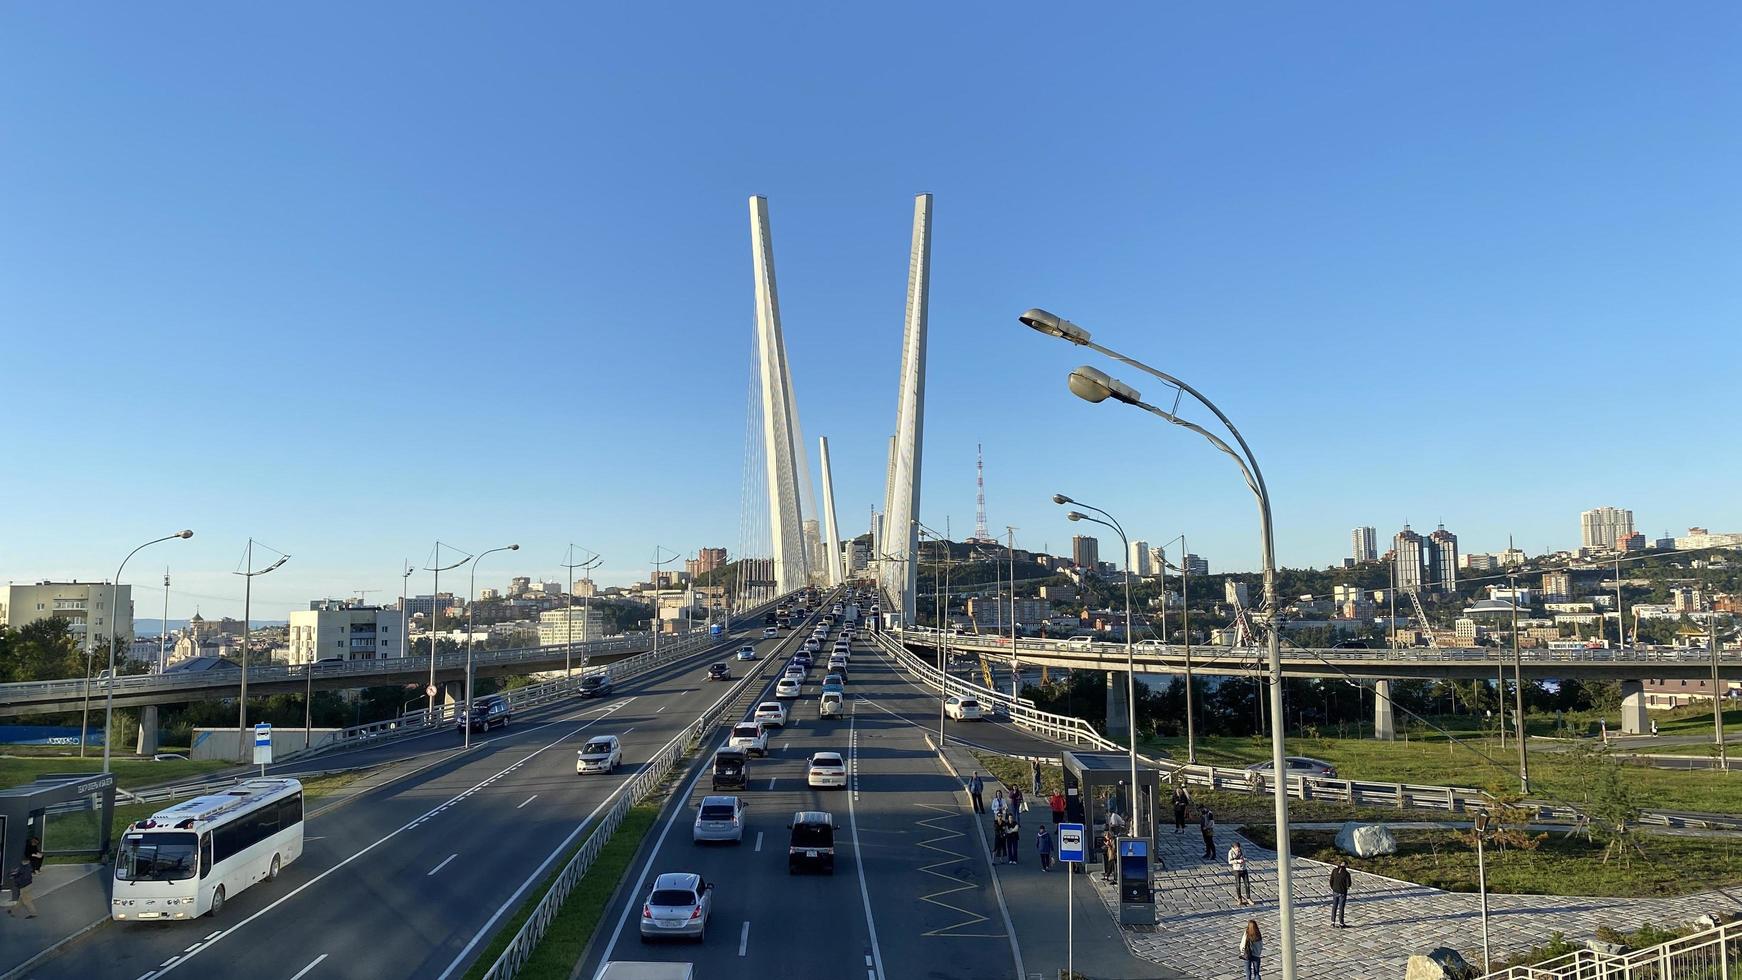 vladivostok, russie - 20 septembre 2022 paysage urbain avec vue sur le pont d'or photo